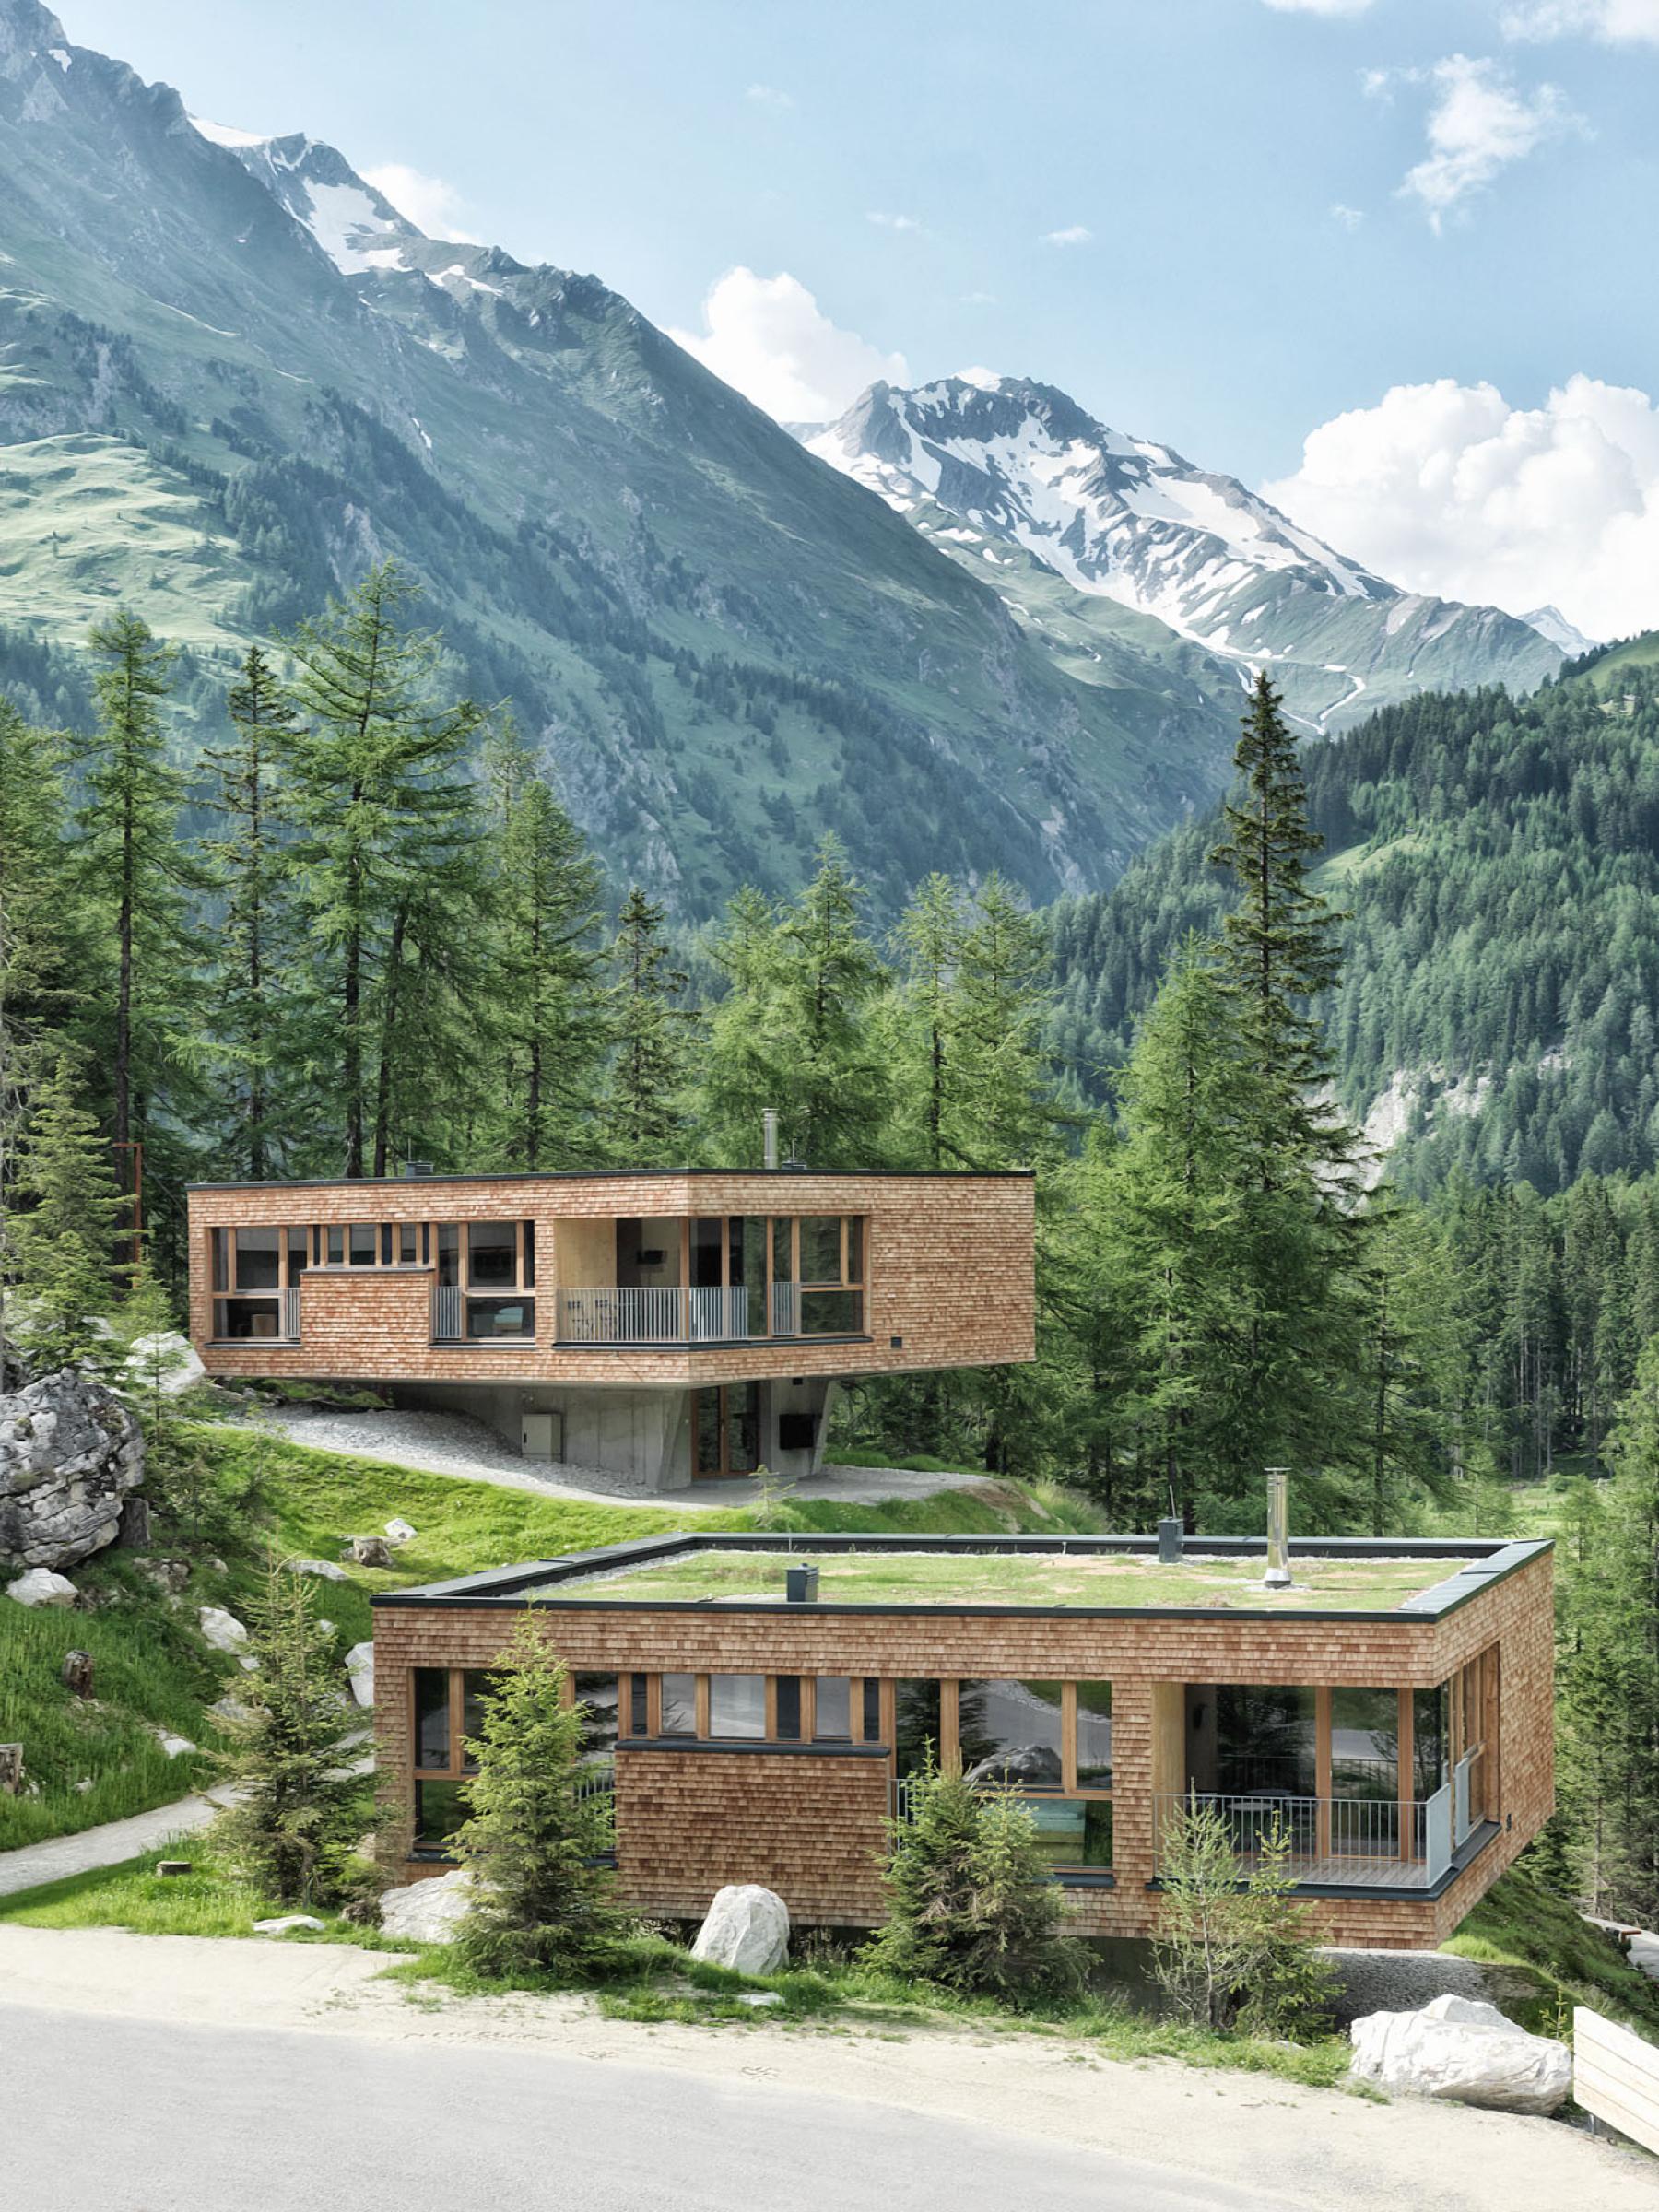 Hotel Gradonna Chalets mit Schindeln, dahinter die Berge Osttirols